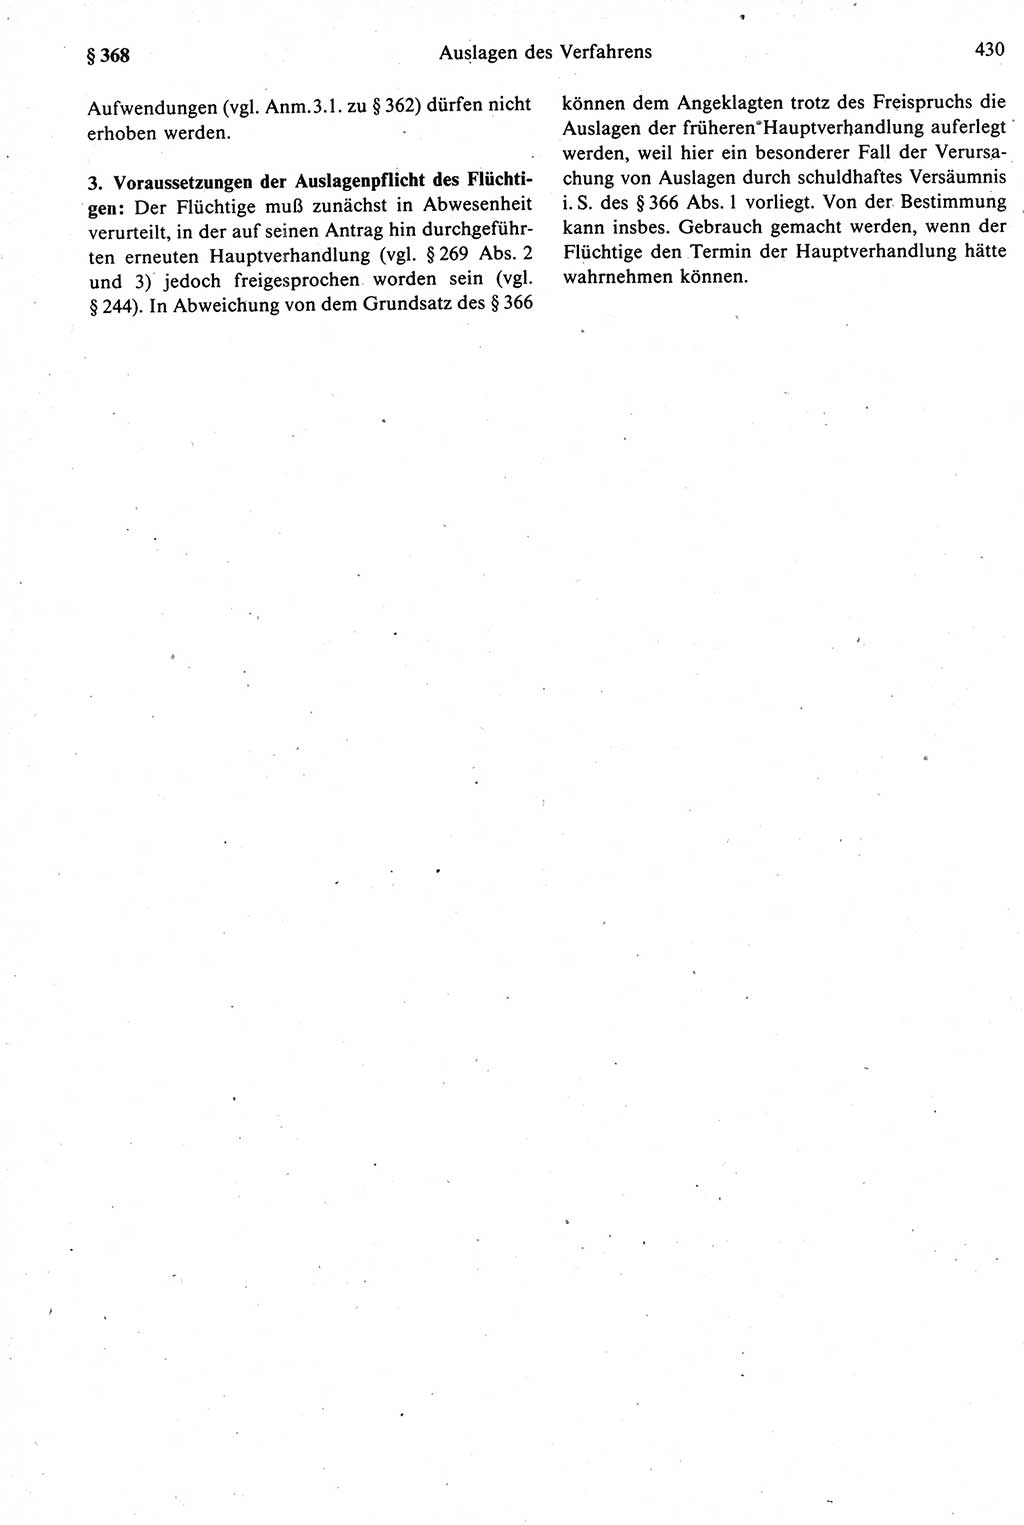 Strafprozeßrecht der DDR [Deutsche Demokratische Republik], Kommentar zur Strafprozeßordnung (StPO) 1987, Seite 430 (Strafprozeßr. DDR Komm. StPO 1987, S. 430)